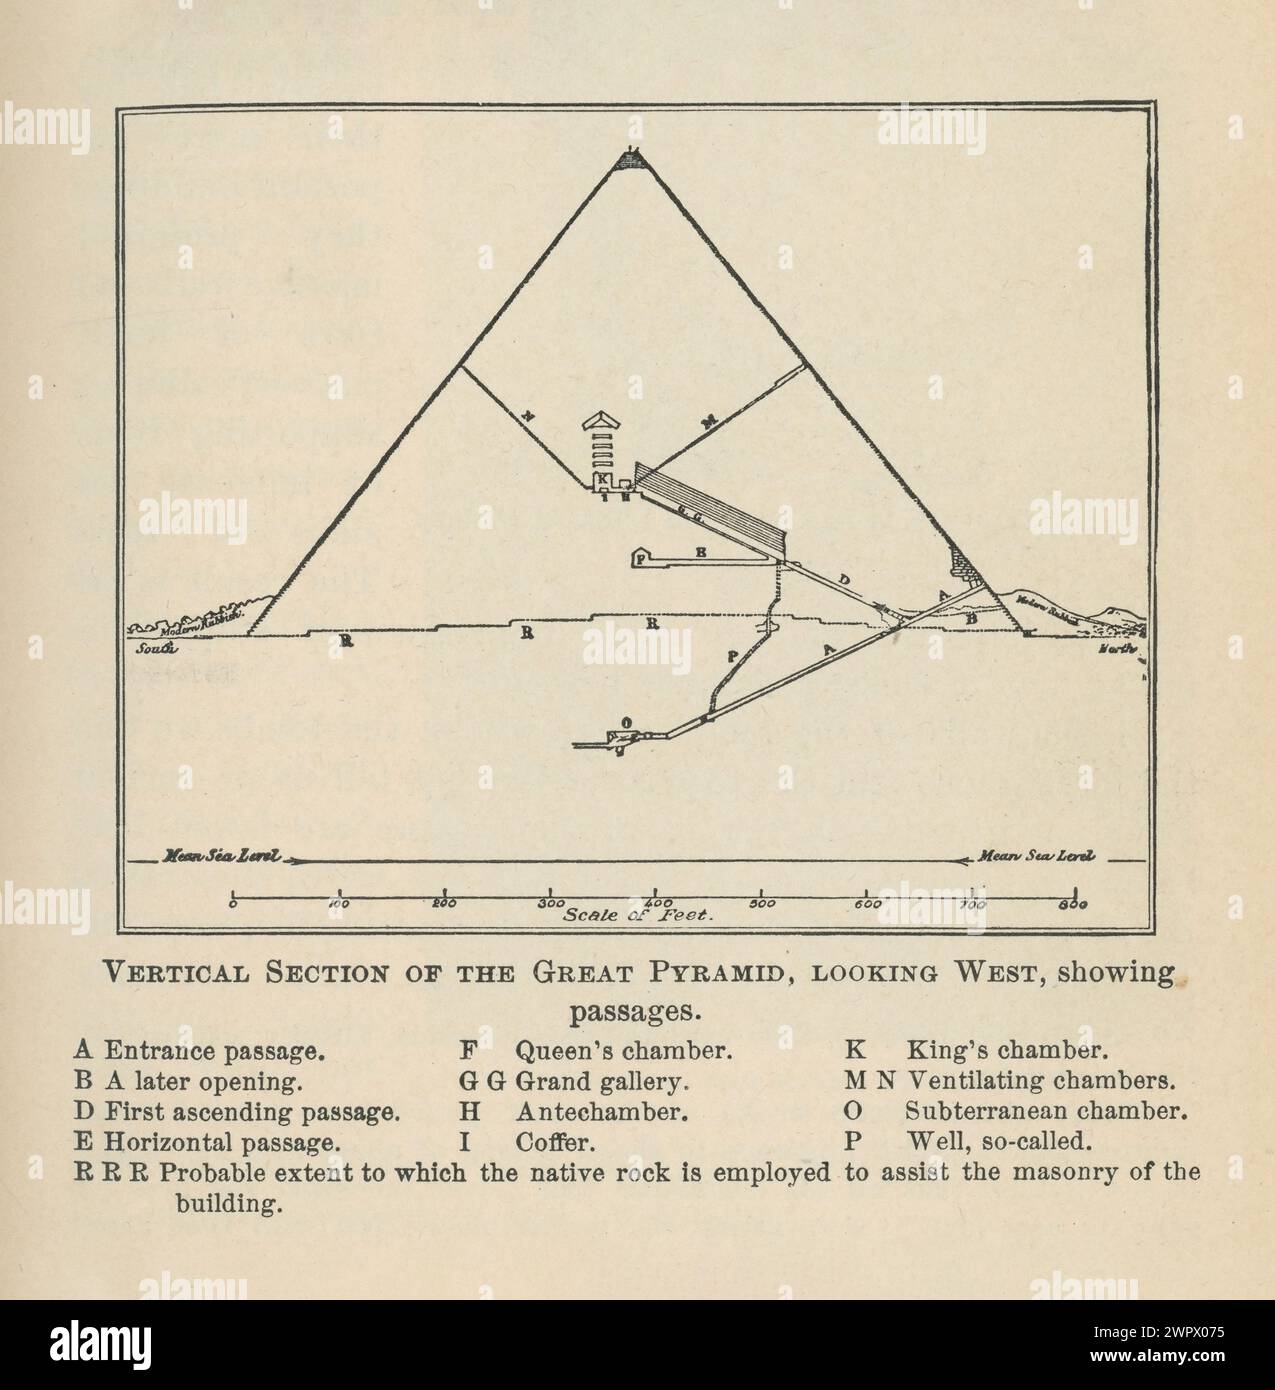 Vintage-Illustration des vertikalen Abschnitts der Großen Pyramide aus einem 1904 erschienenen Buch der antiken Weltgeschichte - viktorianische Archäologie Stockfoto